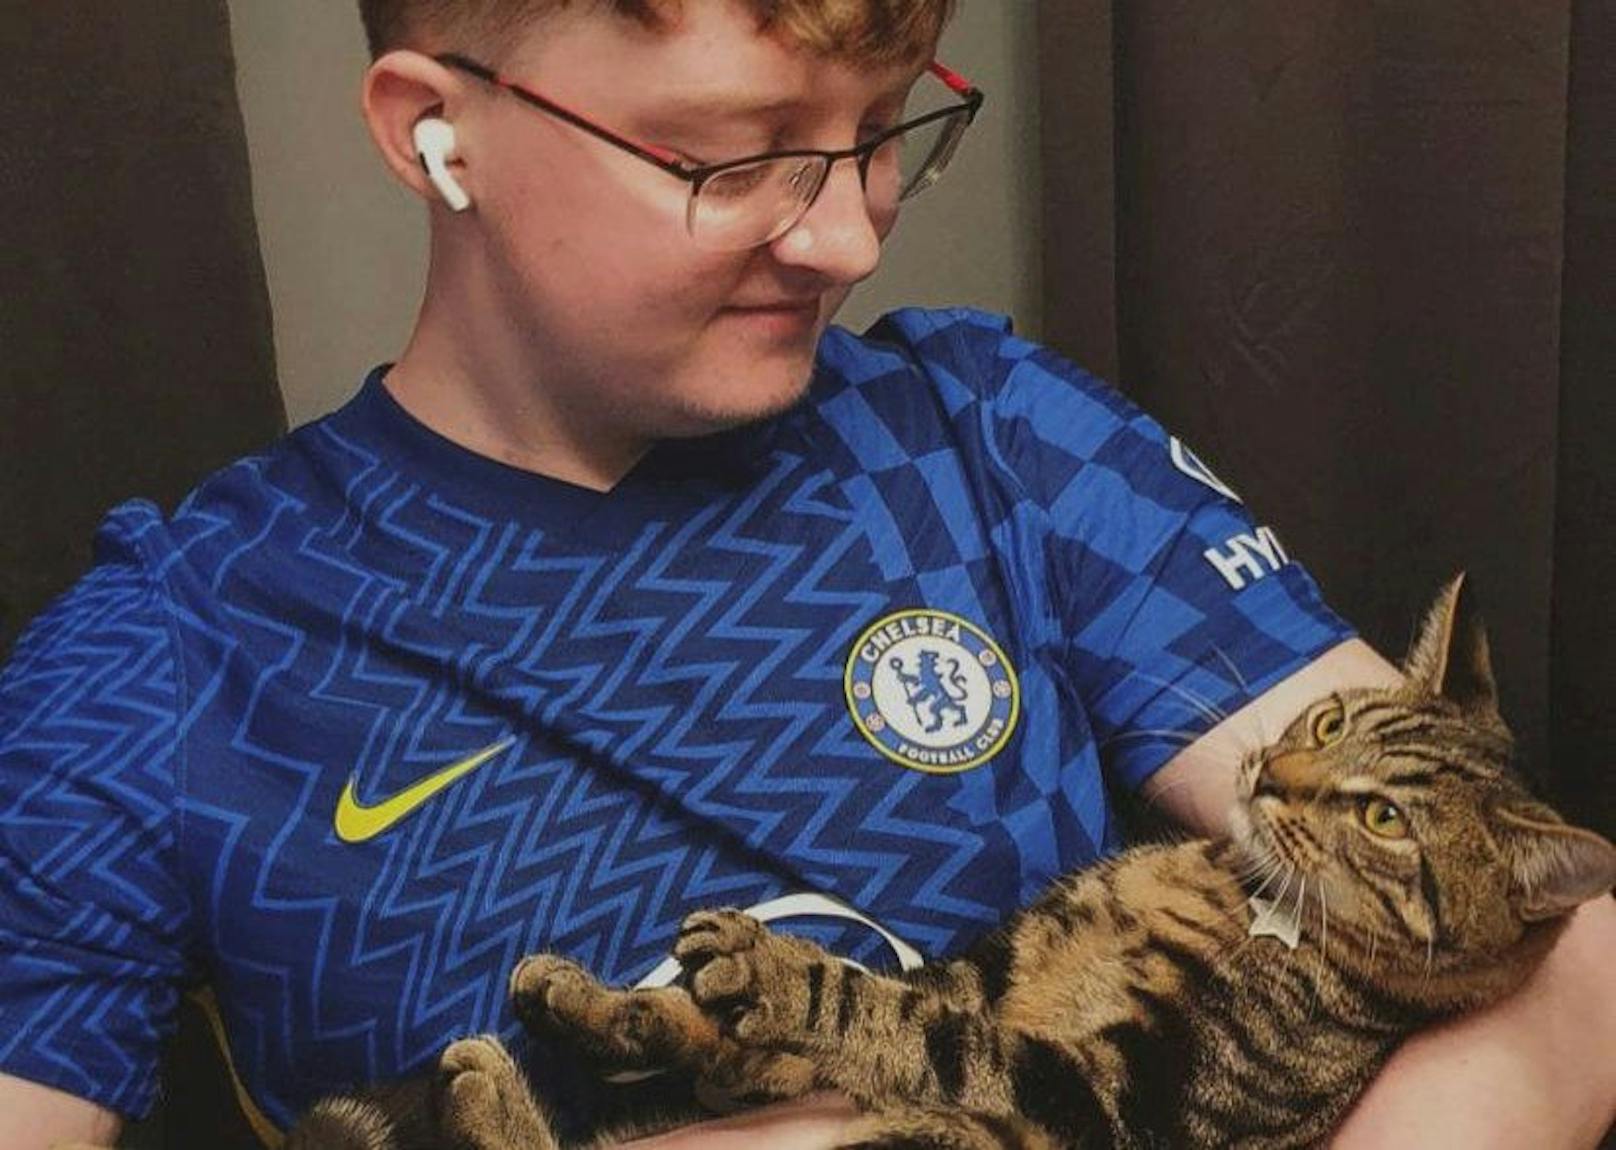 Fussball-Fan tauft Katze "Kurt" nach Tierquäler-Clip um